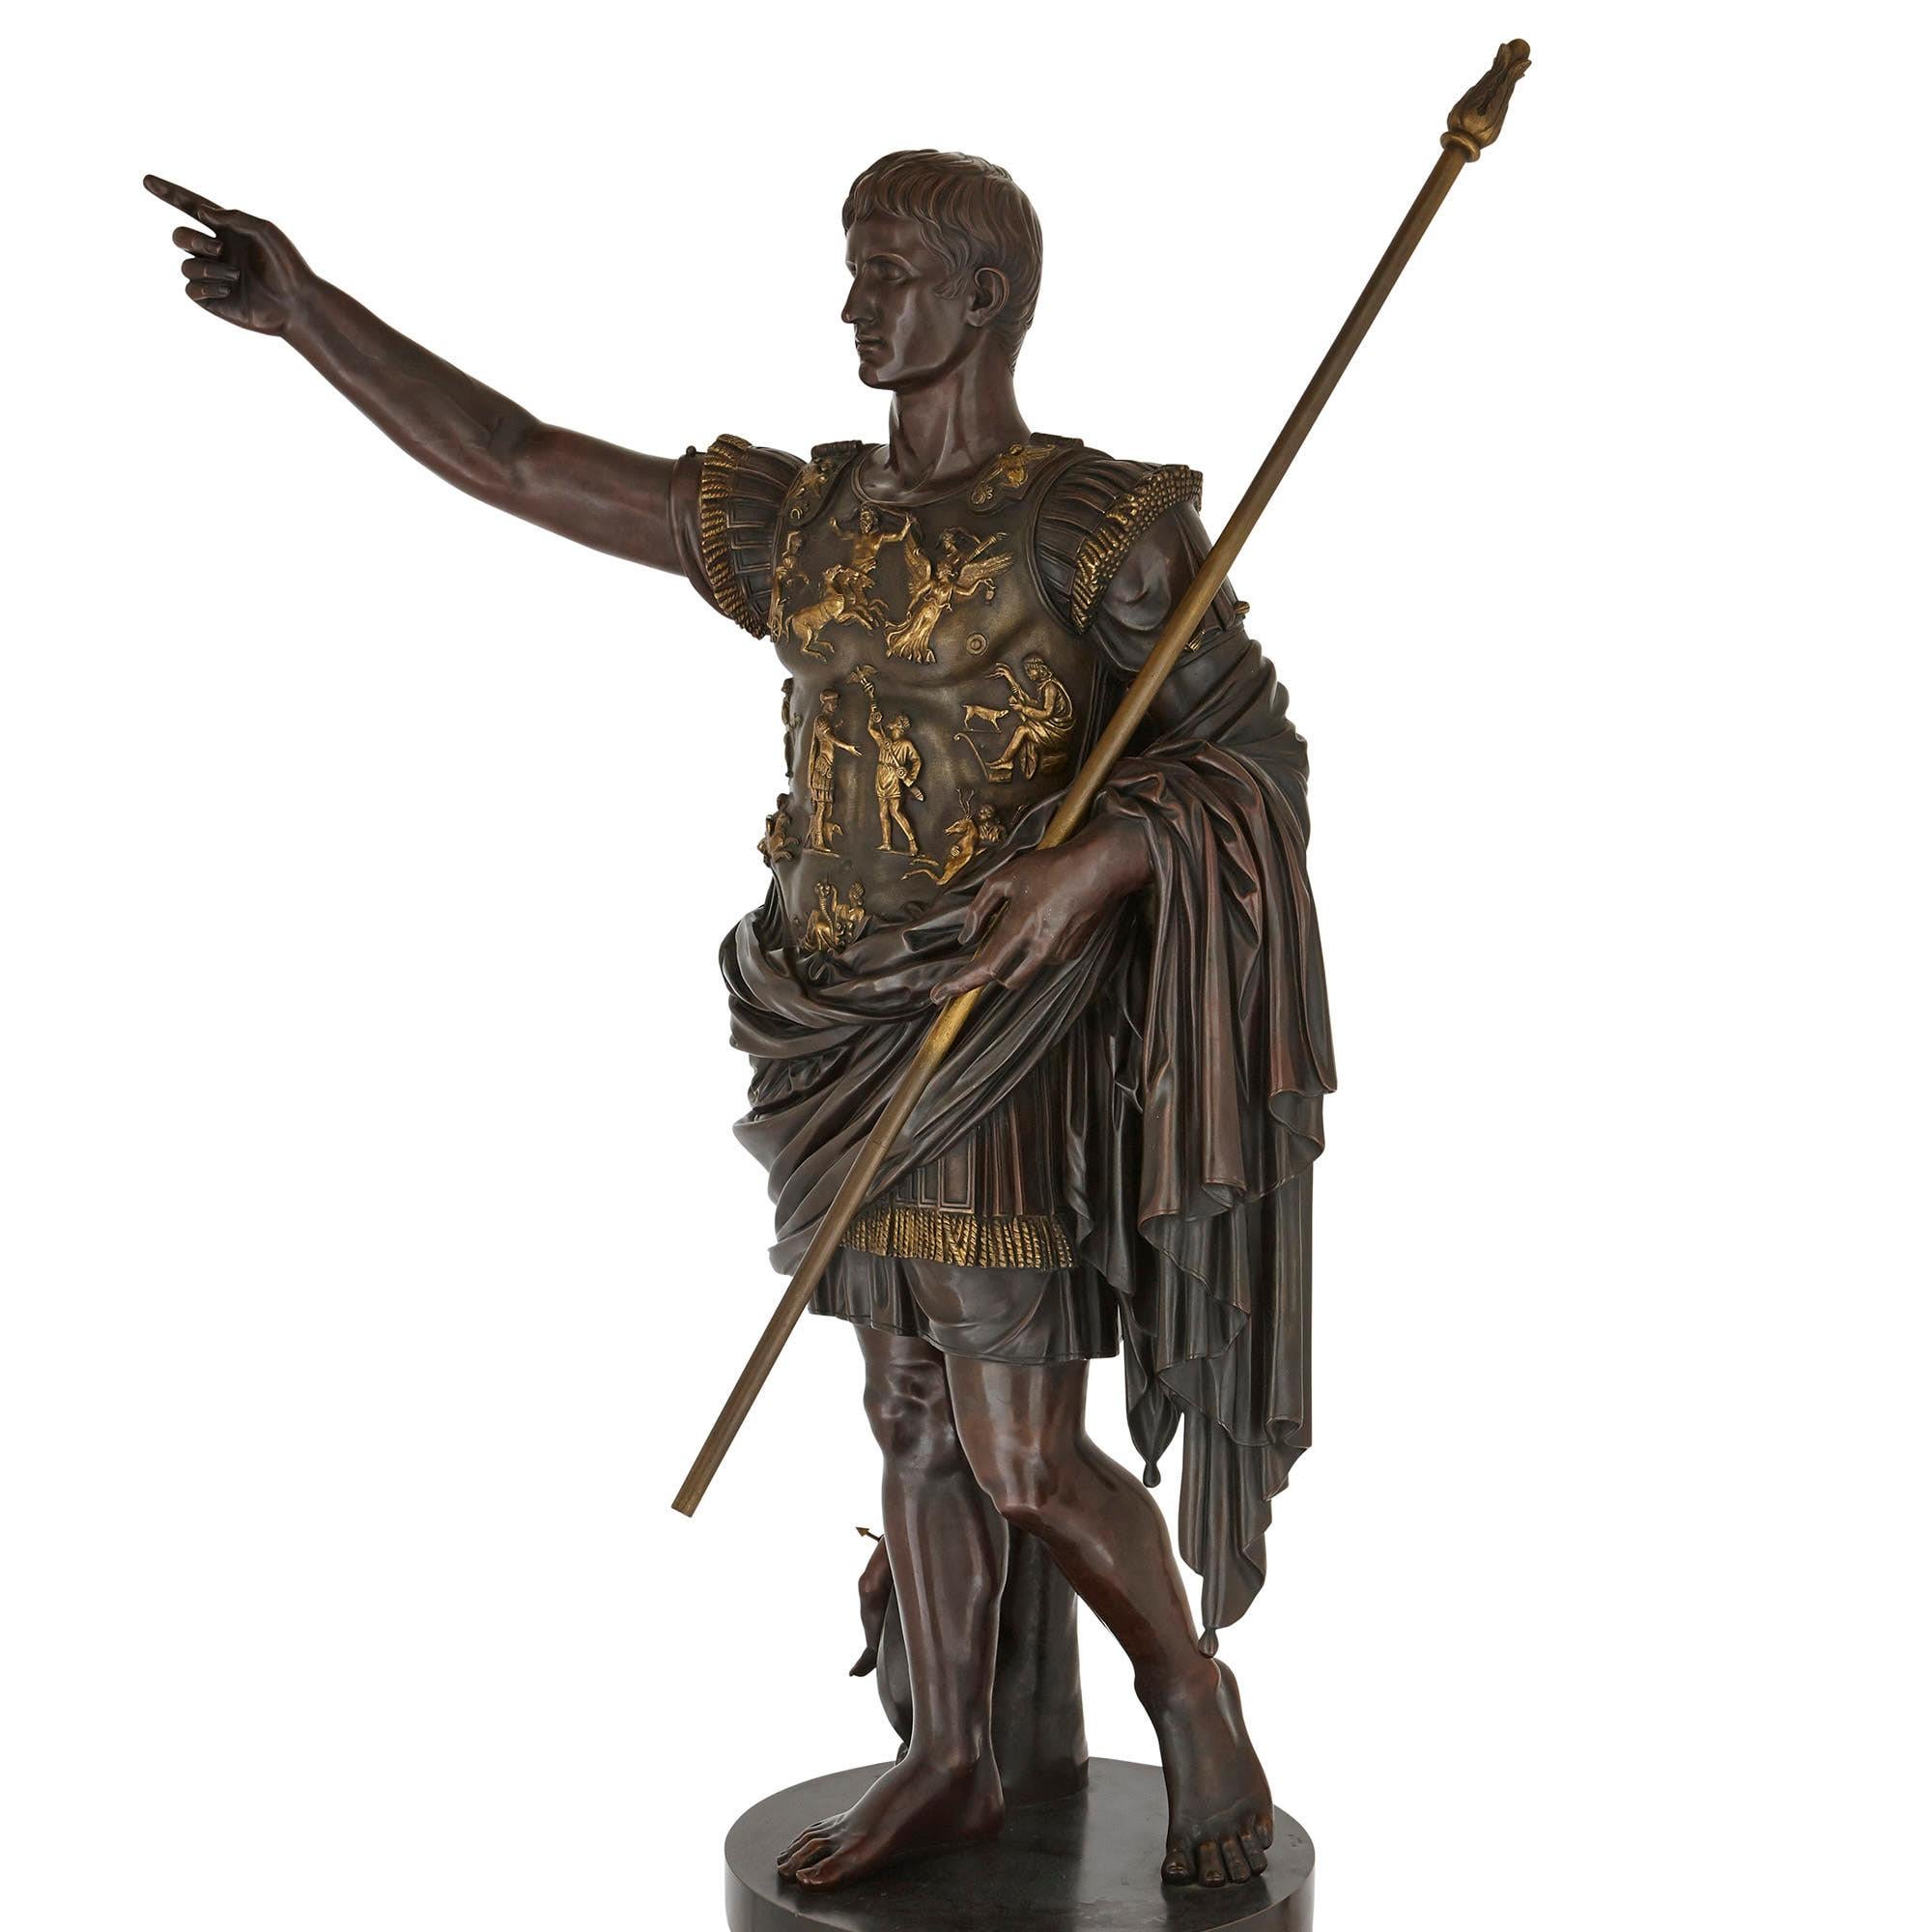 Connue sous le nom de « Auguste de Prima Porta », la version originale en bronze de cette sculpture a été créée vers 20 av. J.-C. Cet original a été perdu depuis l'antiquité mais est connu aujourd'hui grâce à une copie en marbre réalisée une ou deux